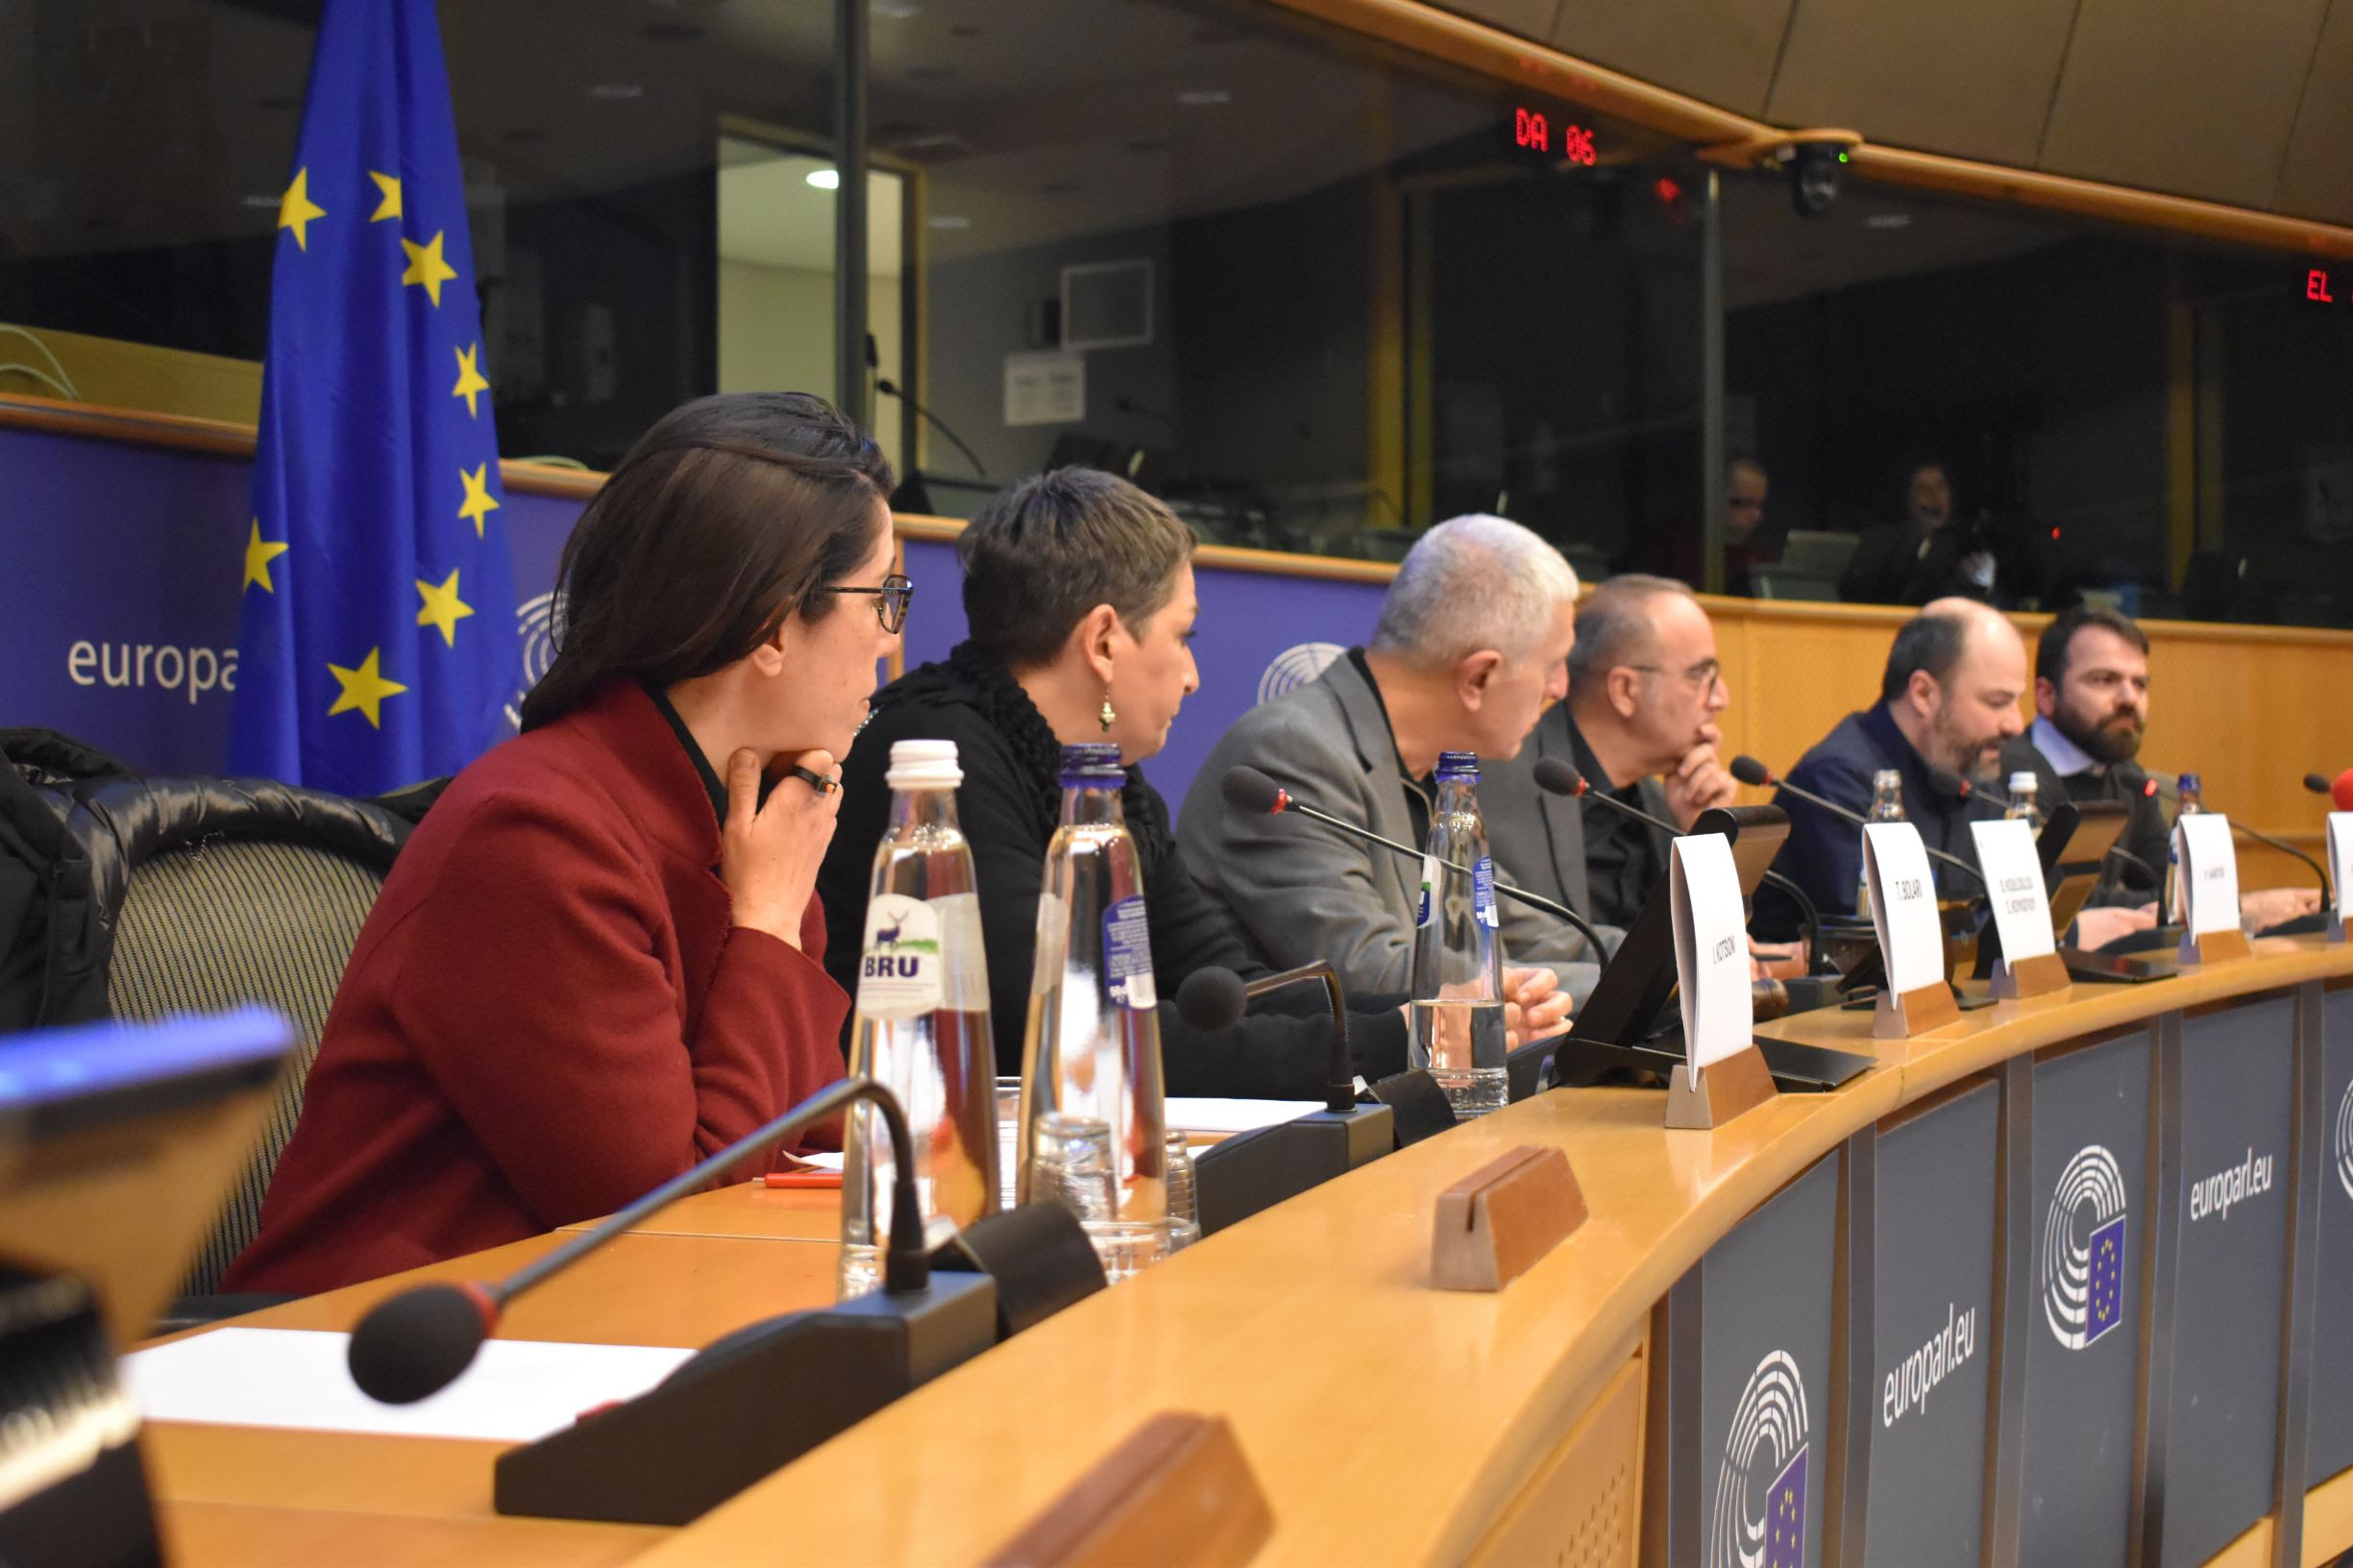 Στ. Κούλογλου: Ο Μπεχράκης στο Ευρωκοινοβούλιο, Μαρτυρίες για έναν Αυτόπτη Μάρτυρα